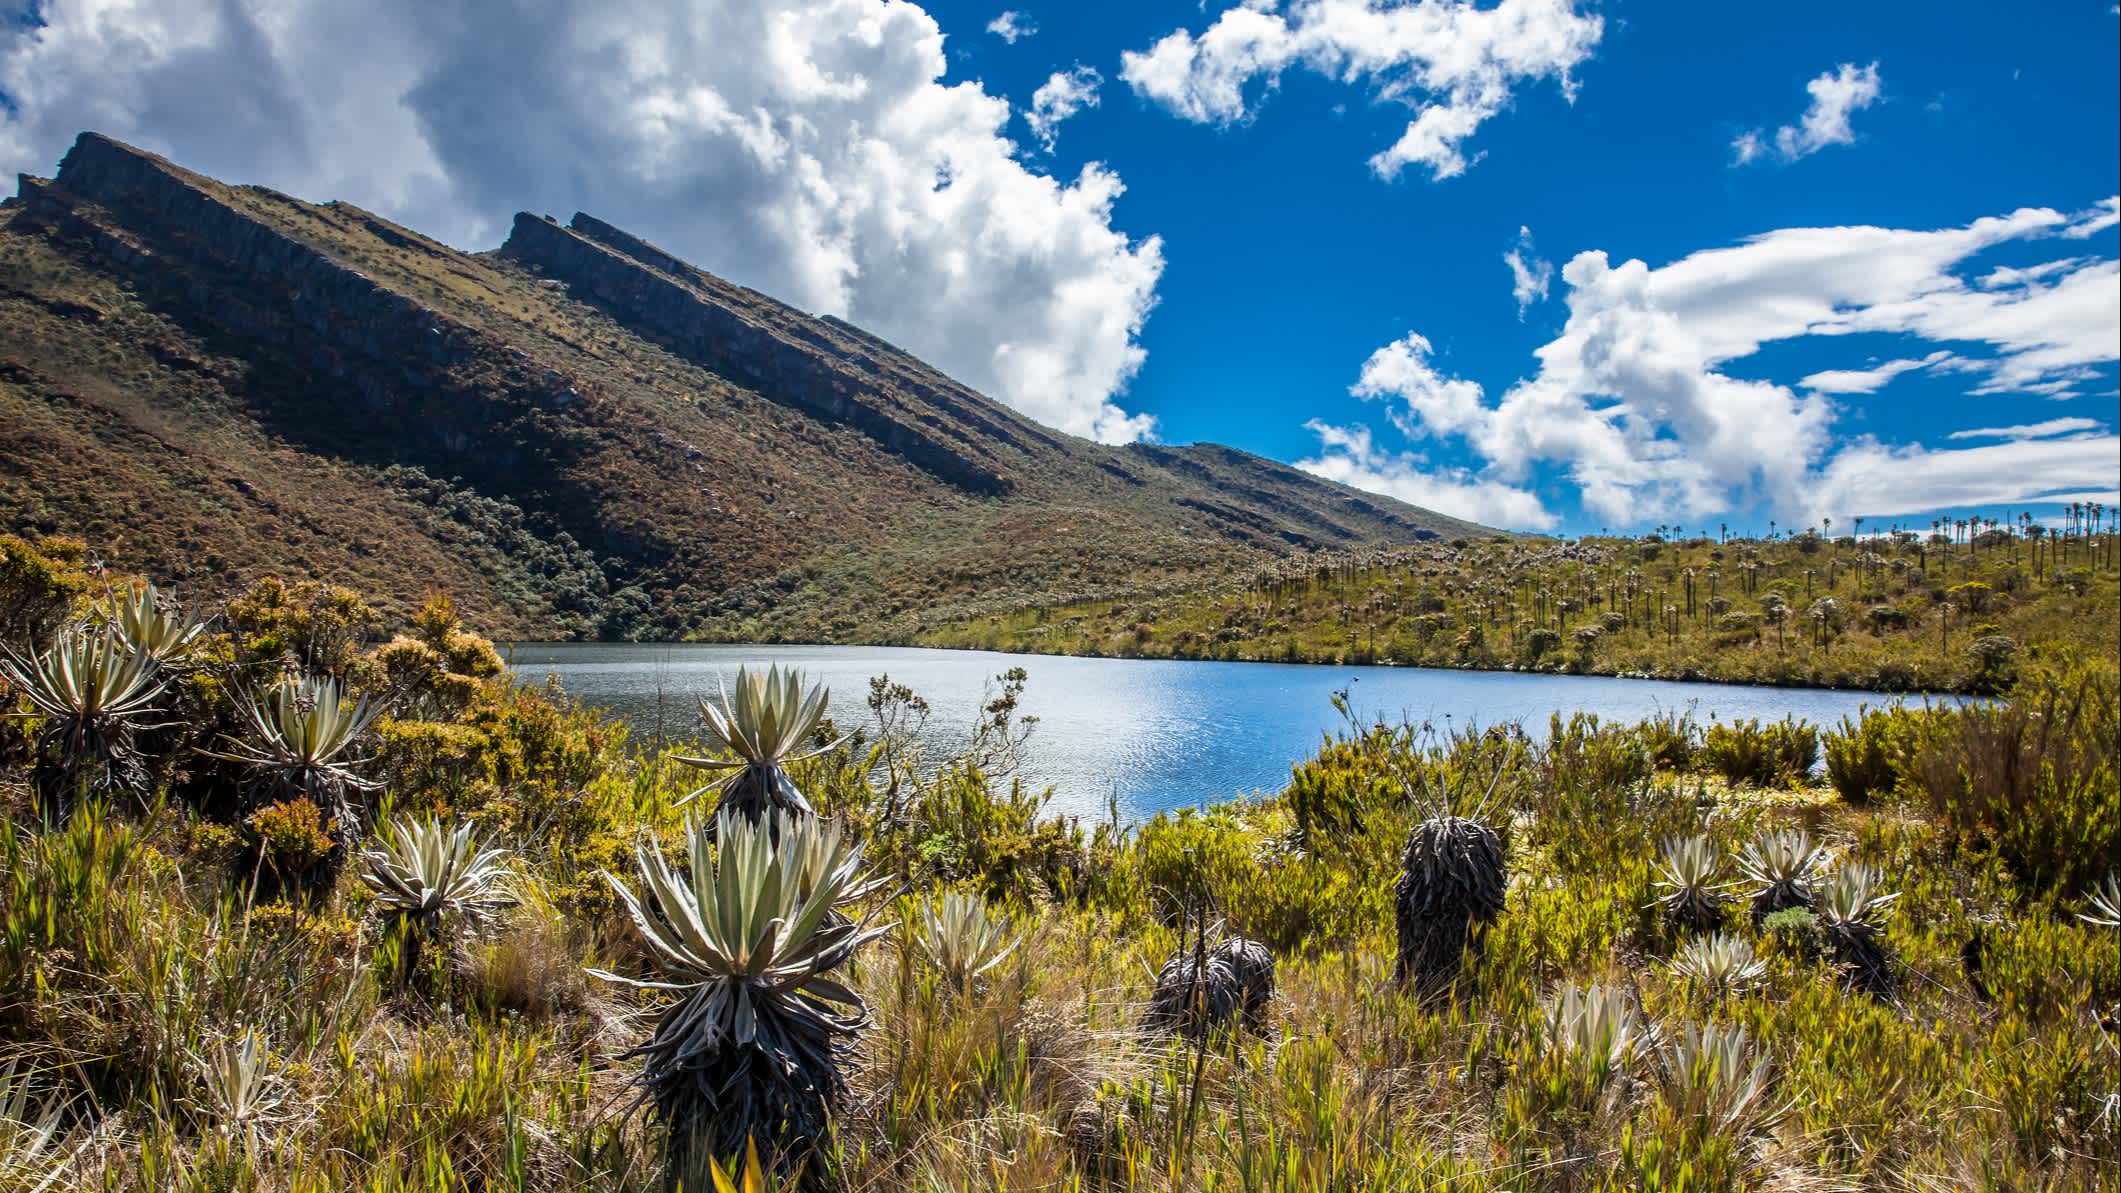 Lac entouré de montagne et de végétation, dans les Andes, près de Paramo en Colombie.